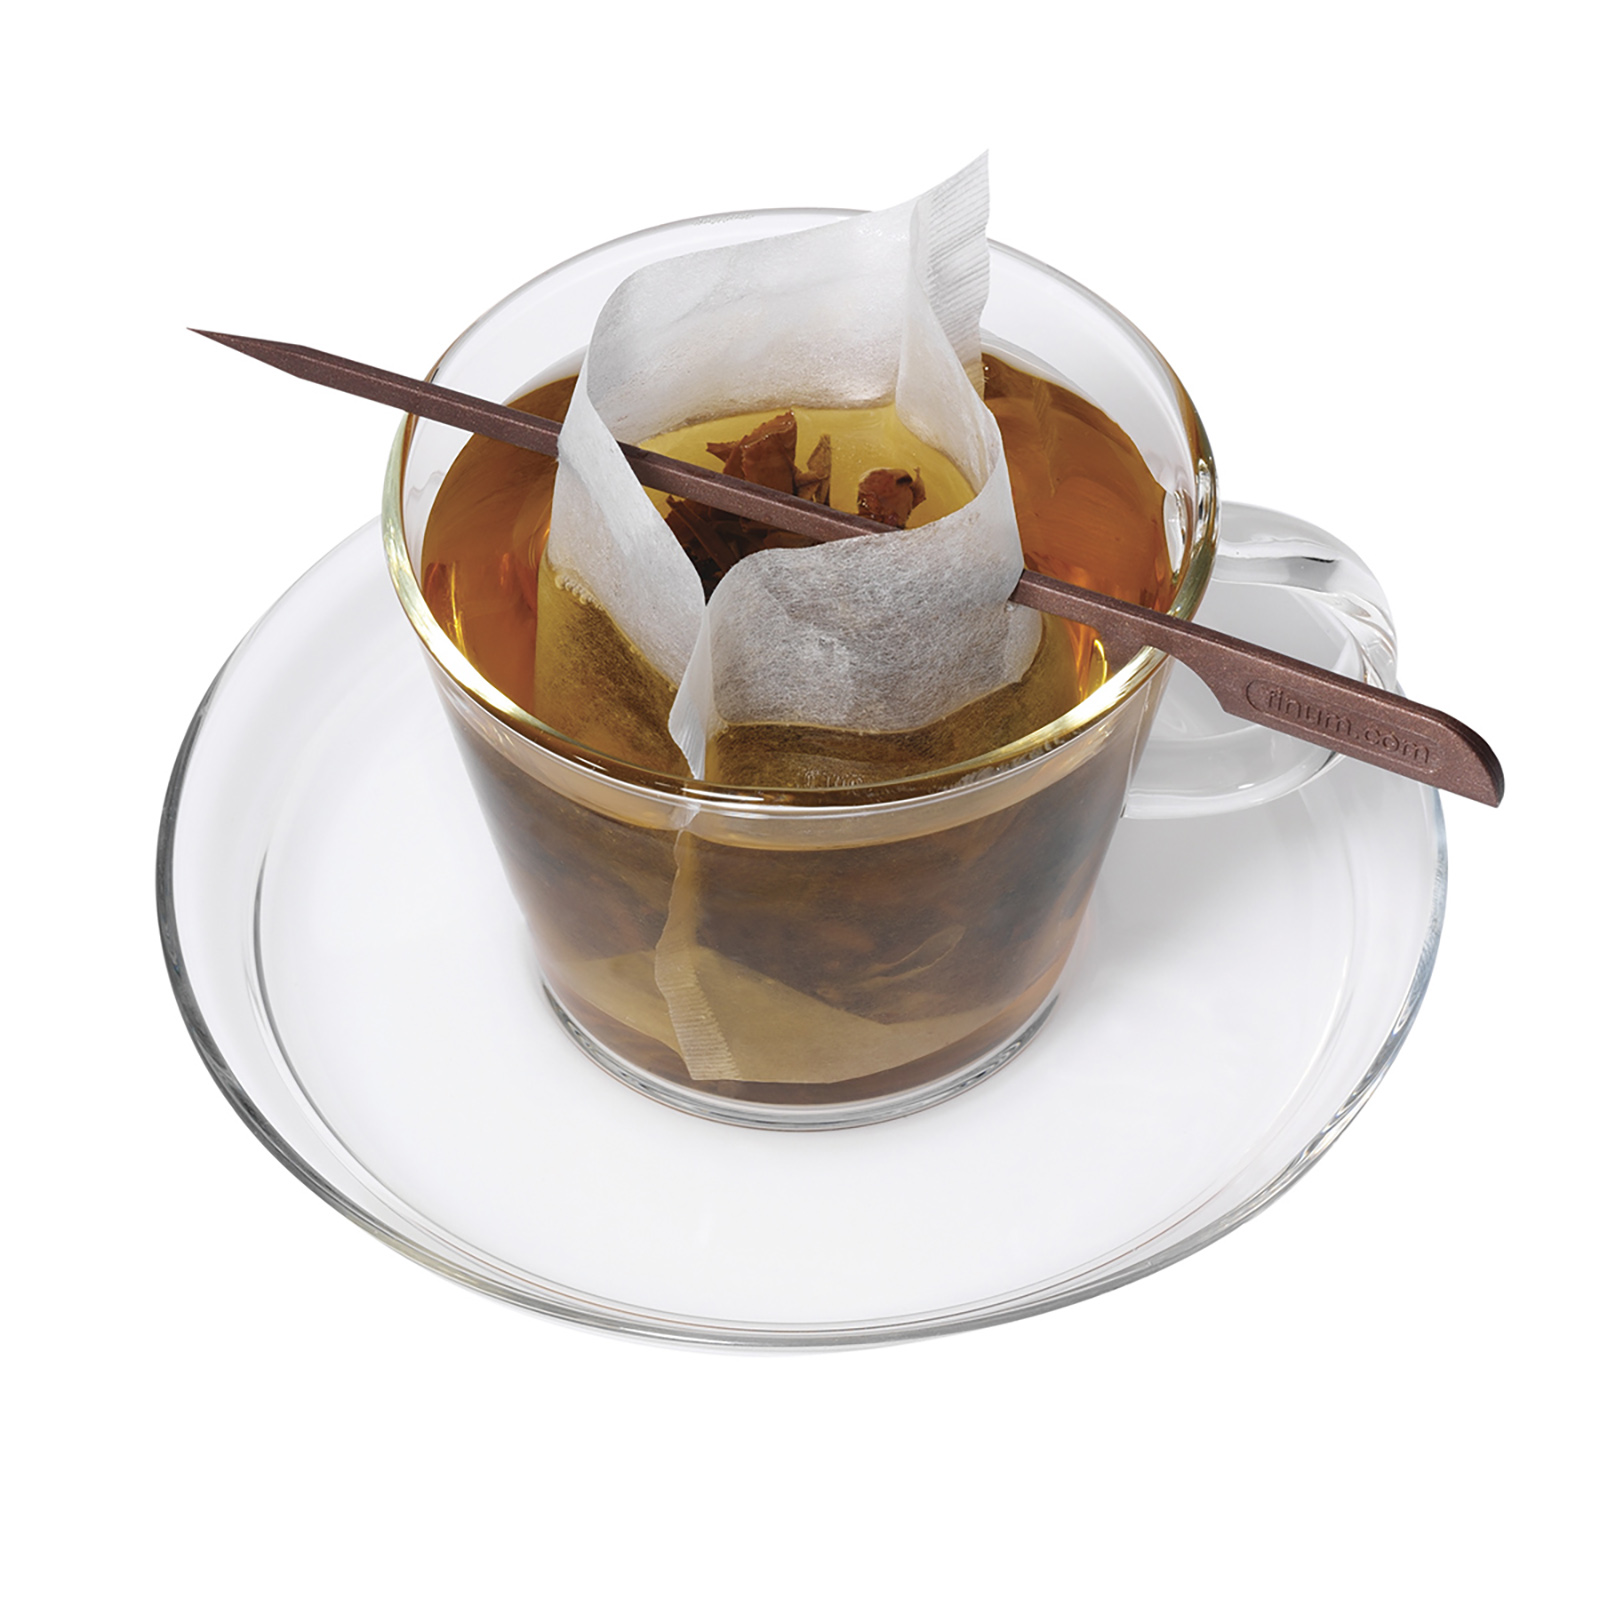 Service Ideas 4205700 Coffee / Tea Filters